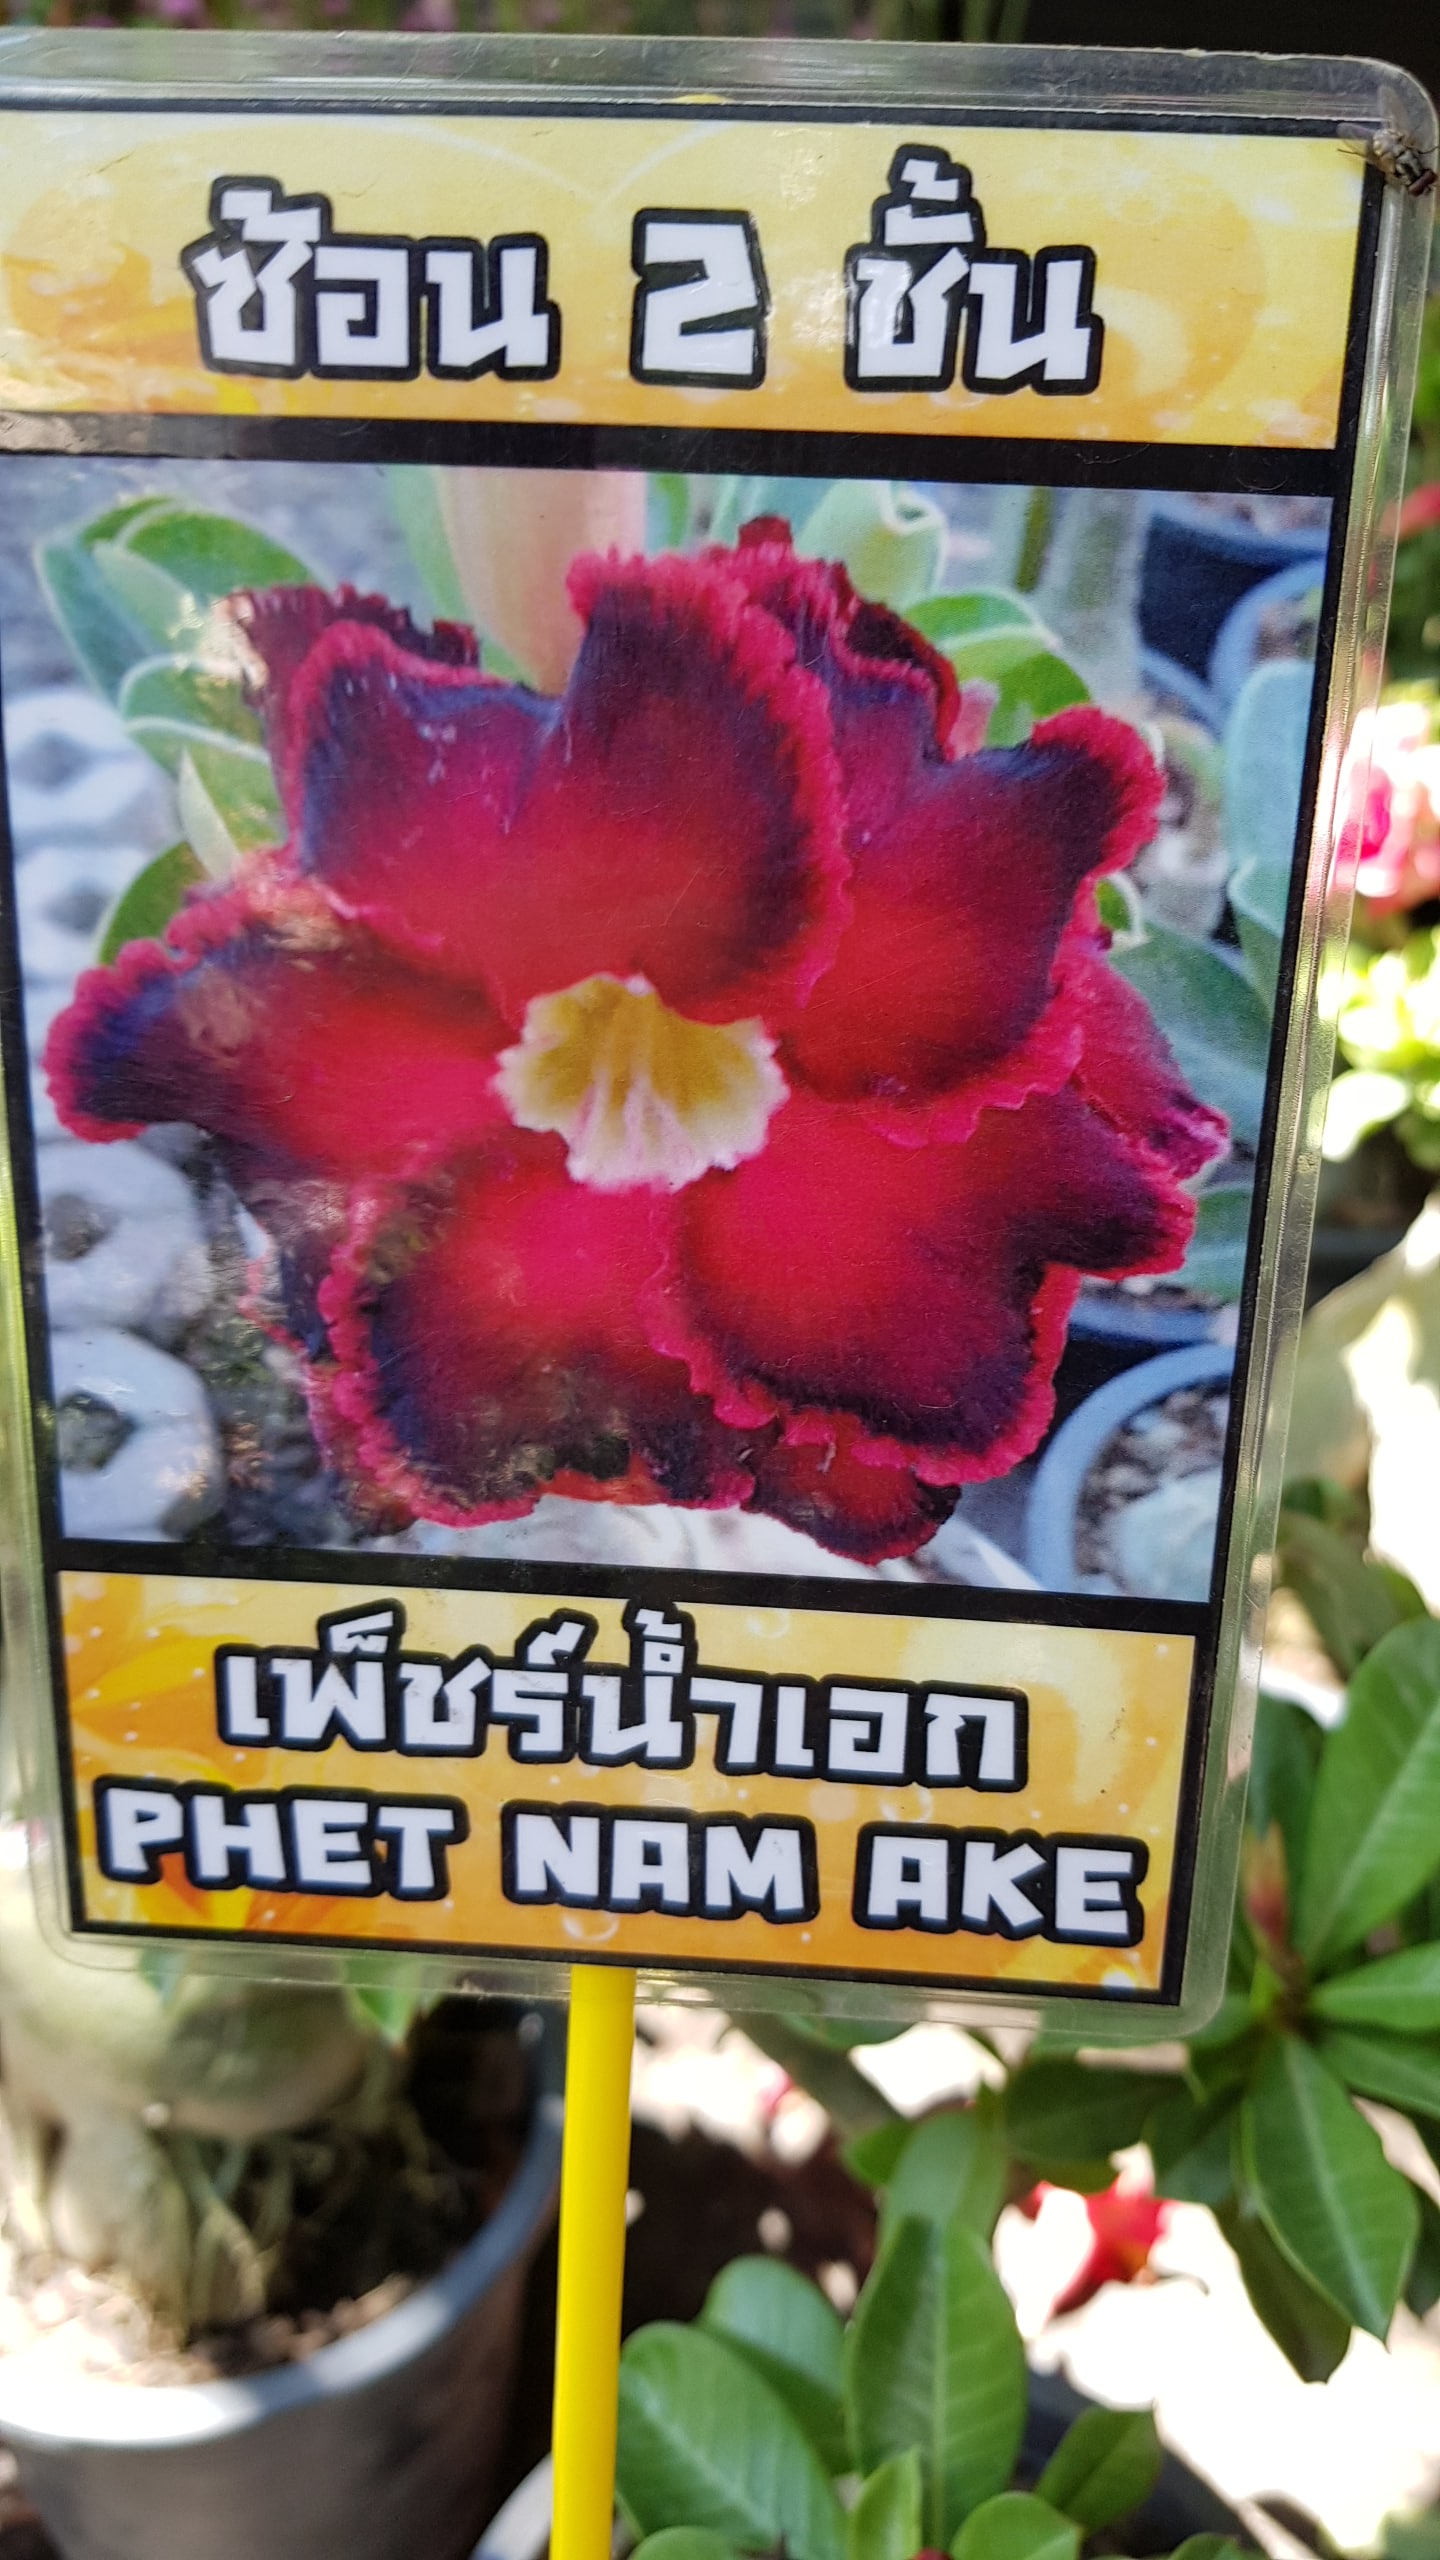 Adenium obessum 'Phet Nam Ake'